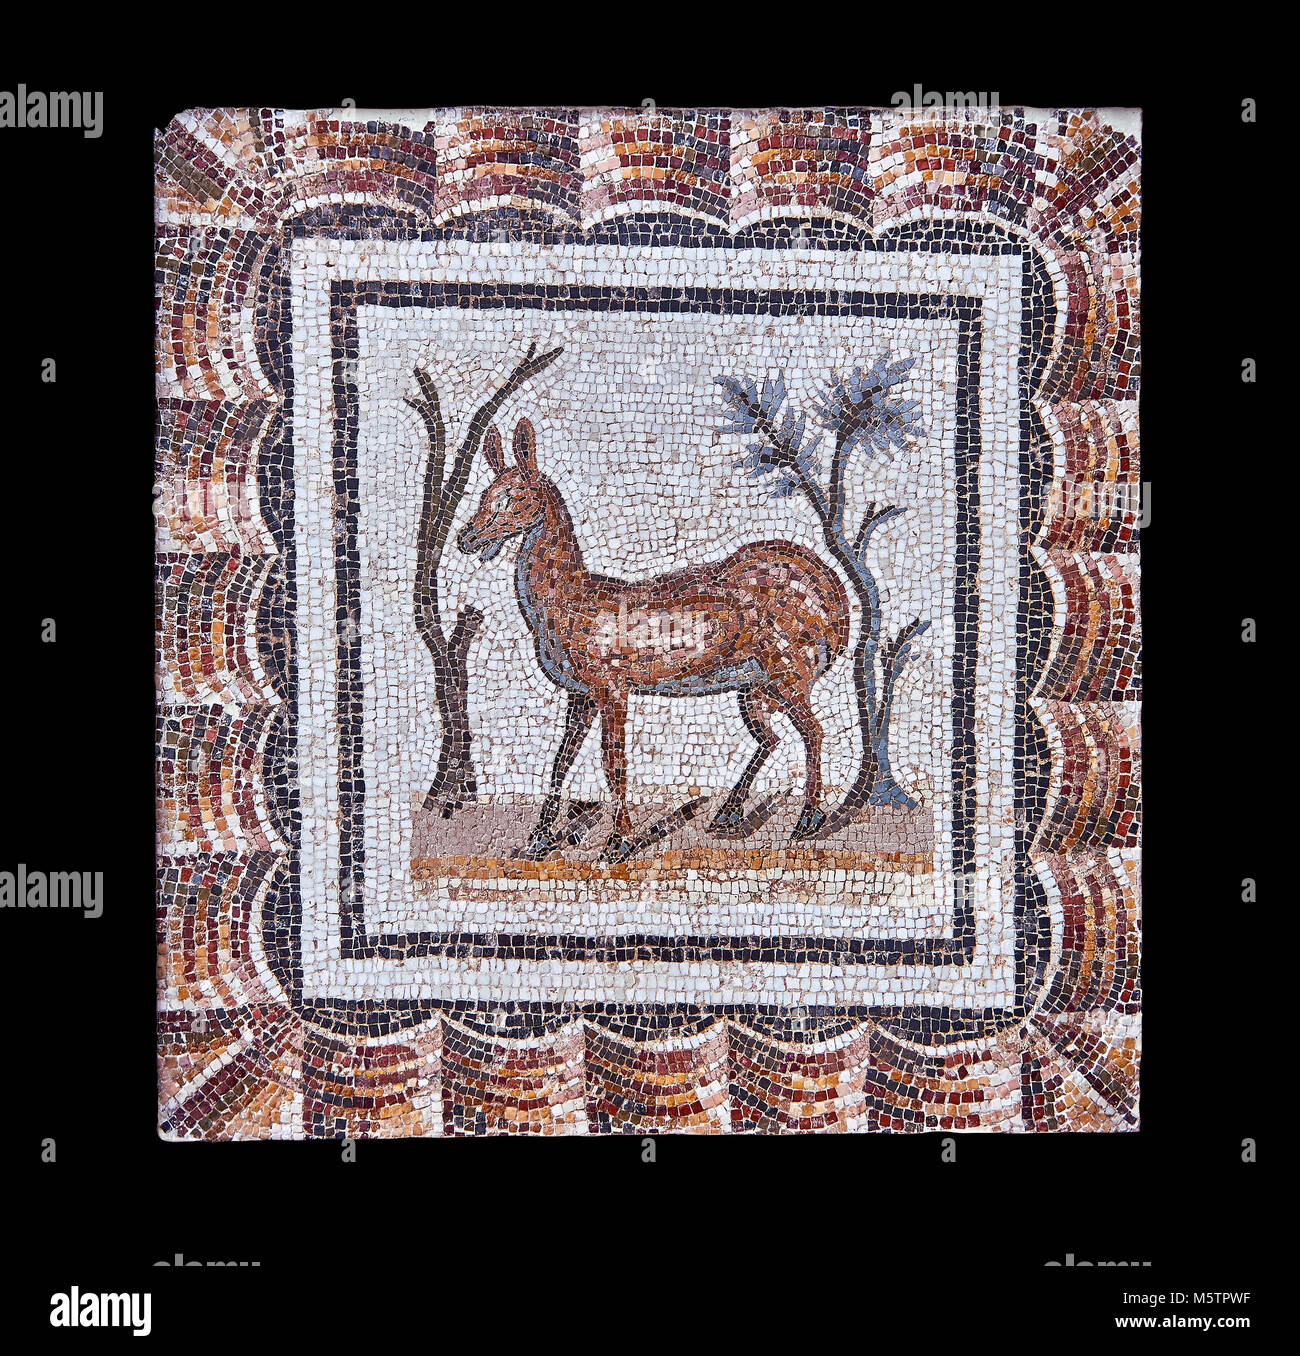 3e siècle mosaïque romaine l'inscription de deux cerfs entre deux arbustes. Thysdrus (El Jem), Tunisie. Le Musée du Bardo, Tunis, Tunisie. Fond noir Banque D'Images